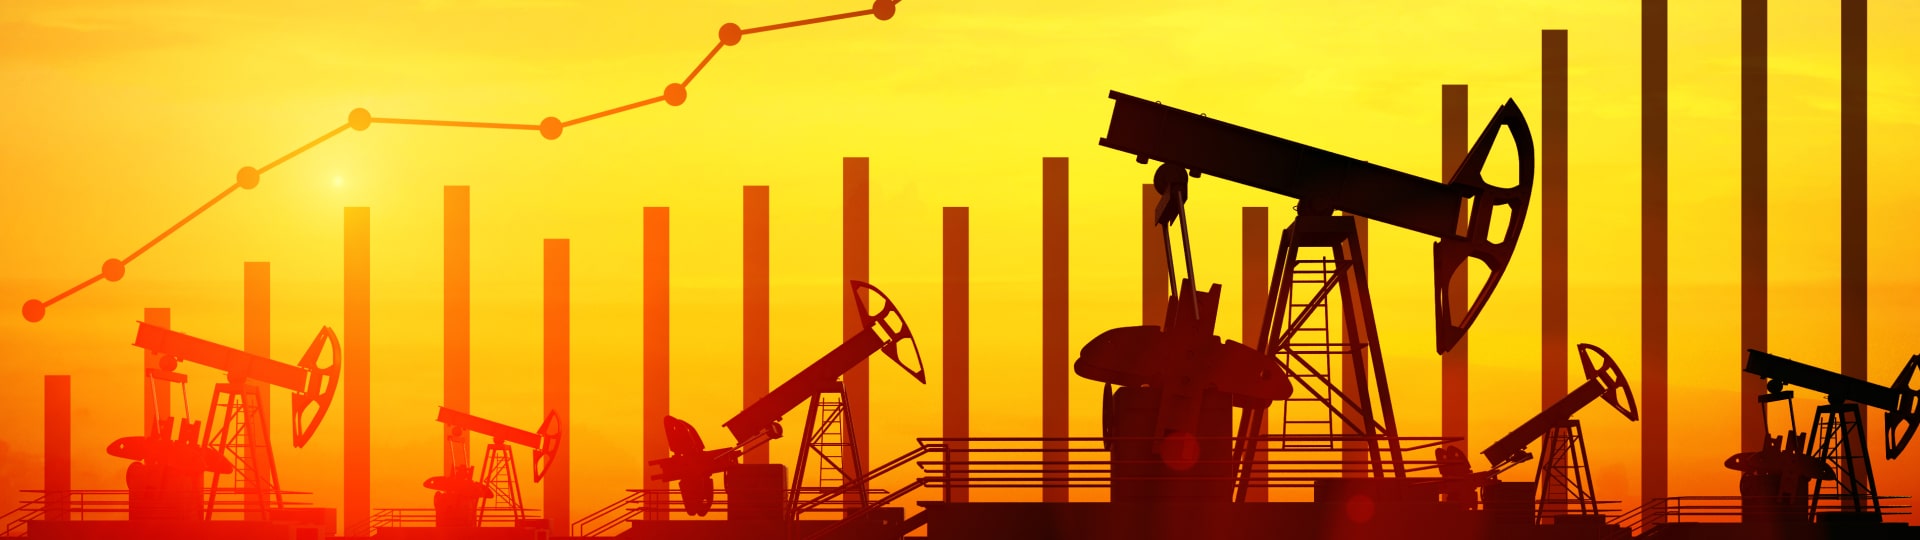 Jak se budou vyvíjet ceny pohonných hmot v ČR a ceny ropy?